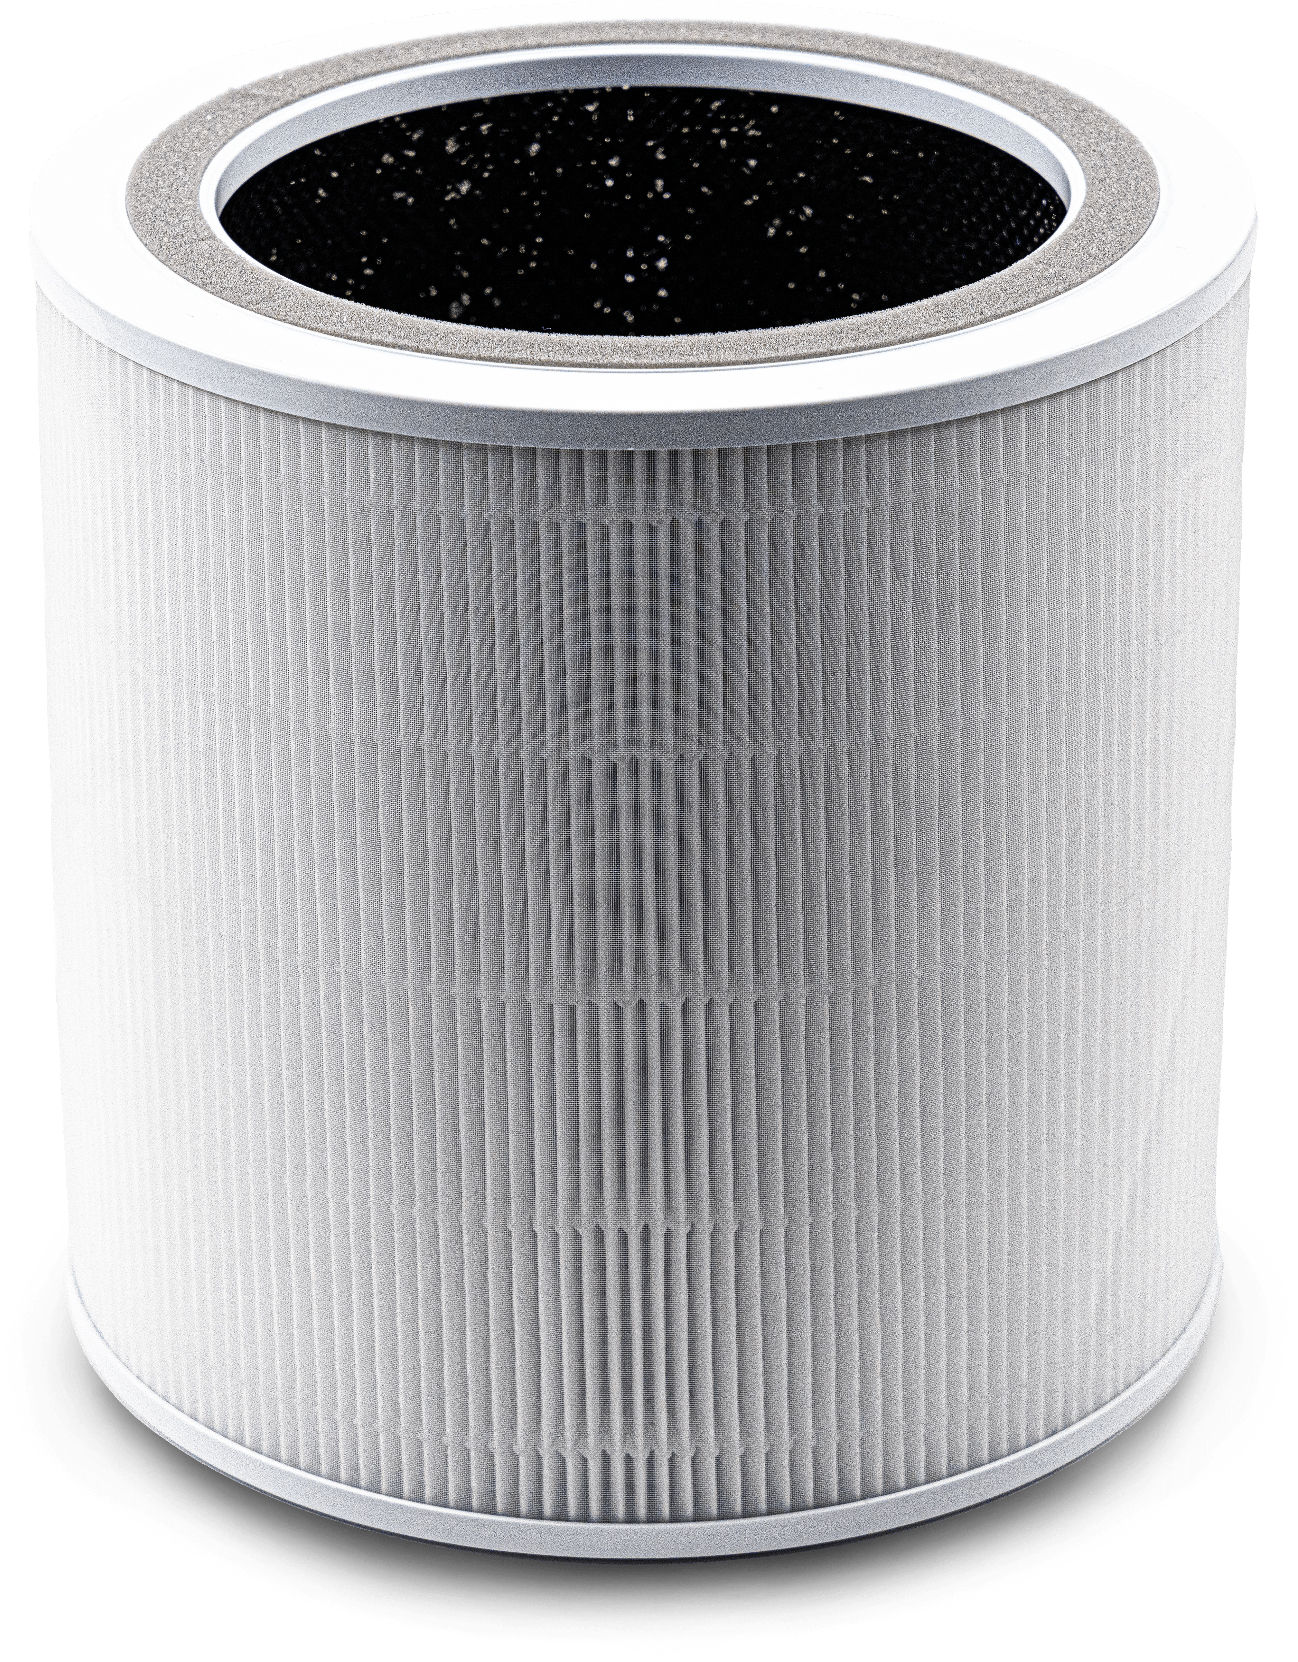 Фильтр для увлажнителя воздуха Levoit Air Cleaner Filter Core 400S True HEPA 3-Stage